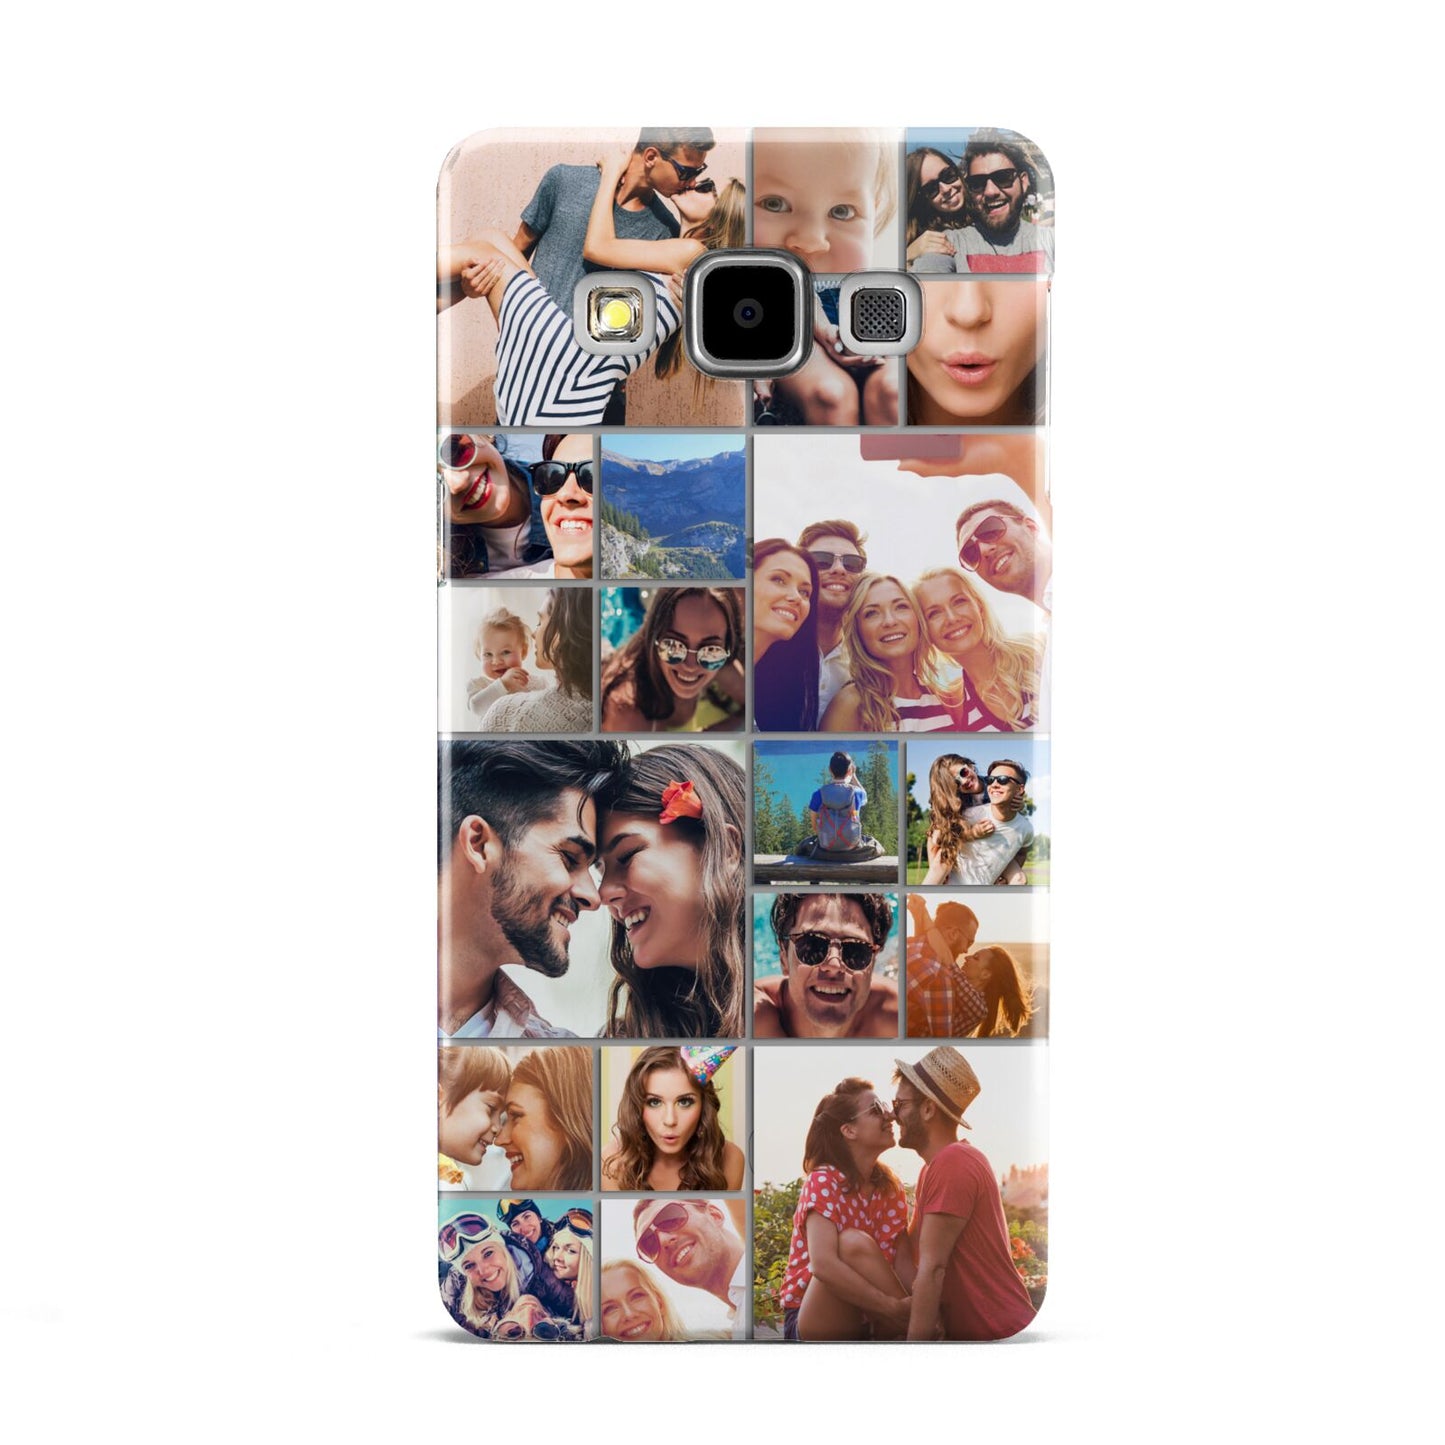 Photo Grid Samsung Galaxy A5 Case